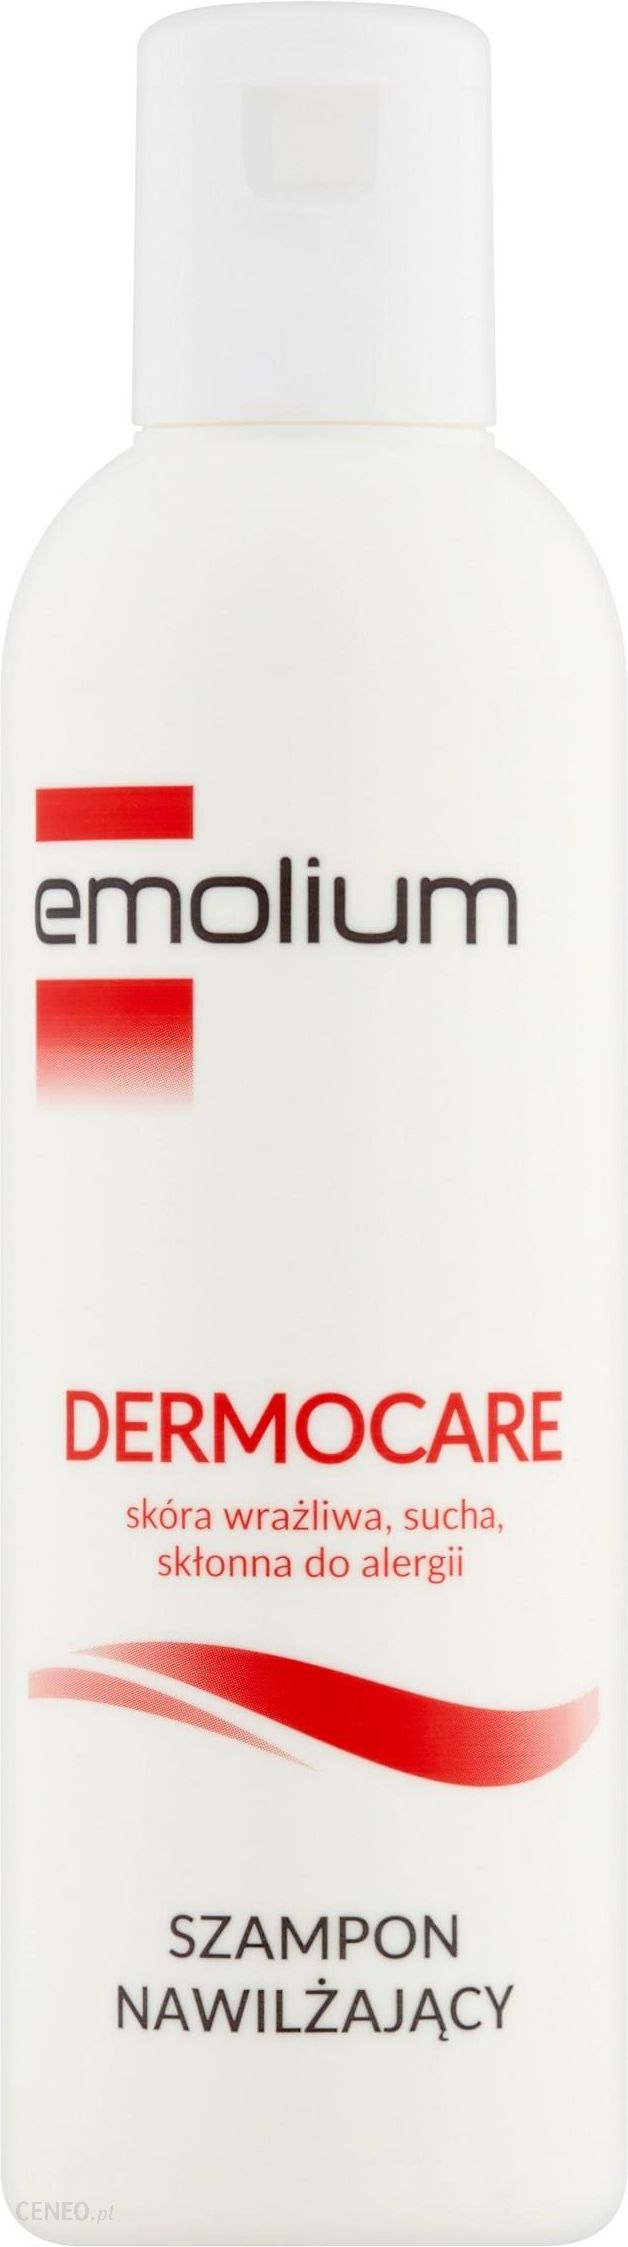 szampon do włosów dermocare emolium opinie